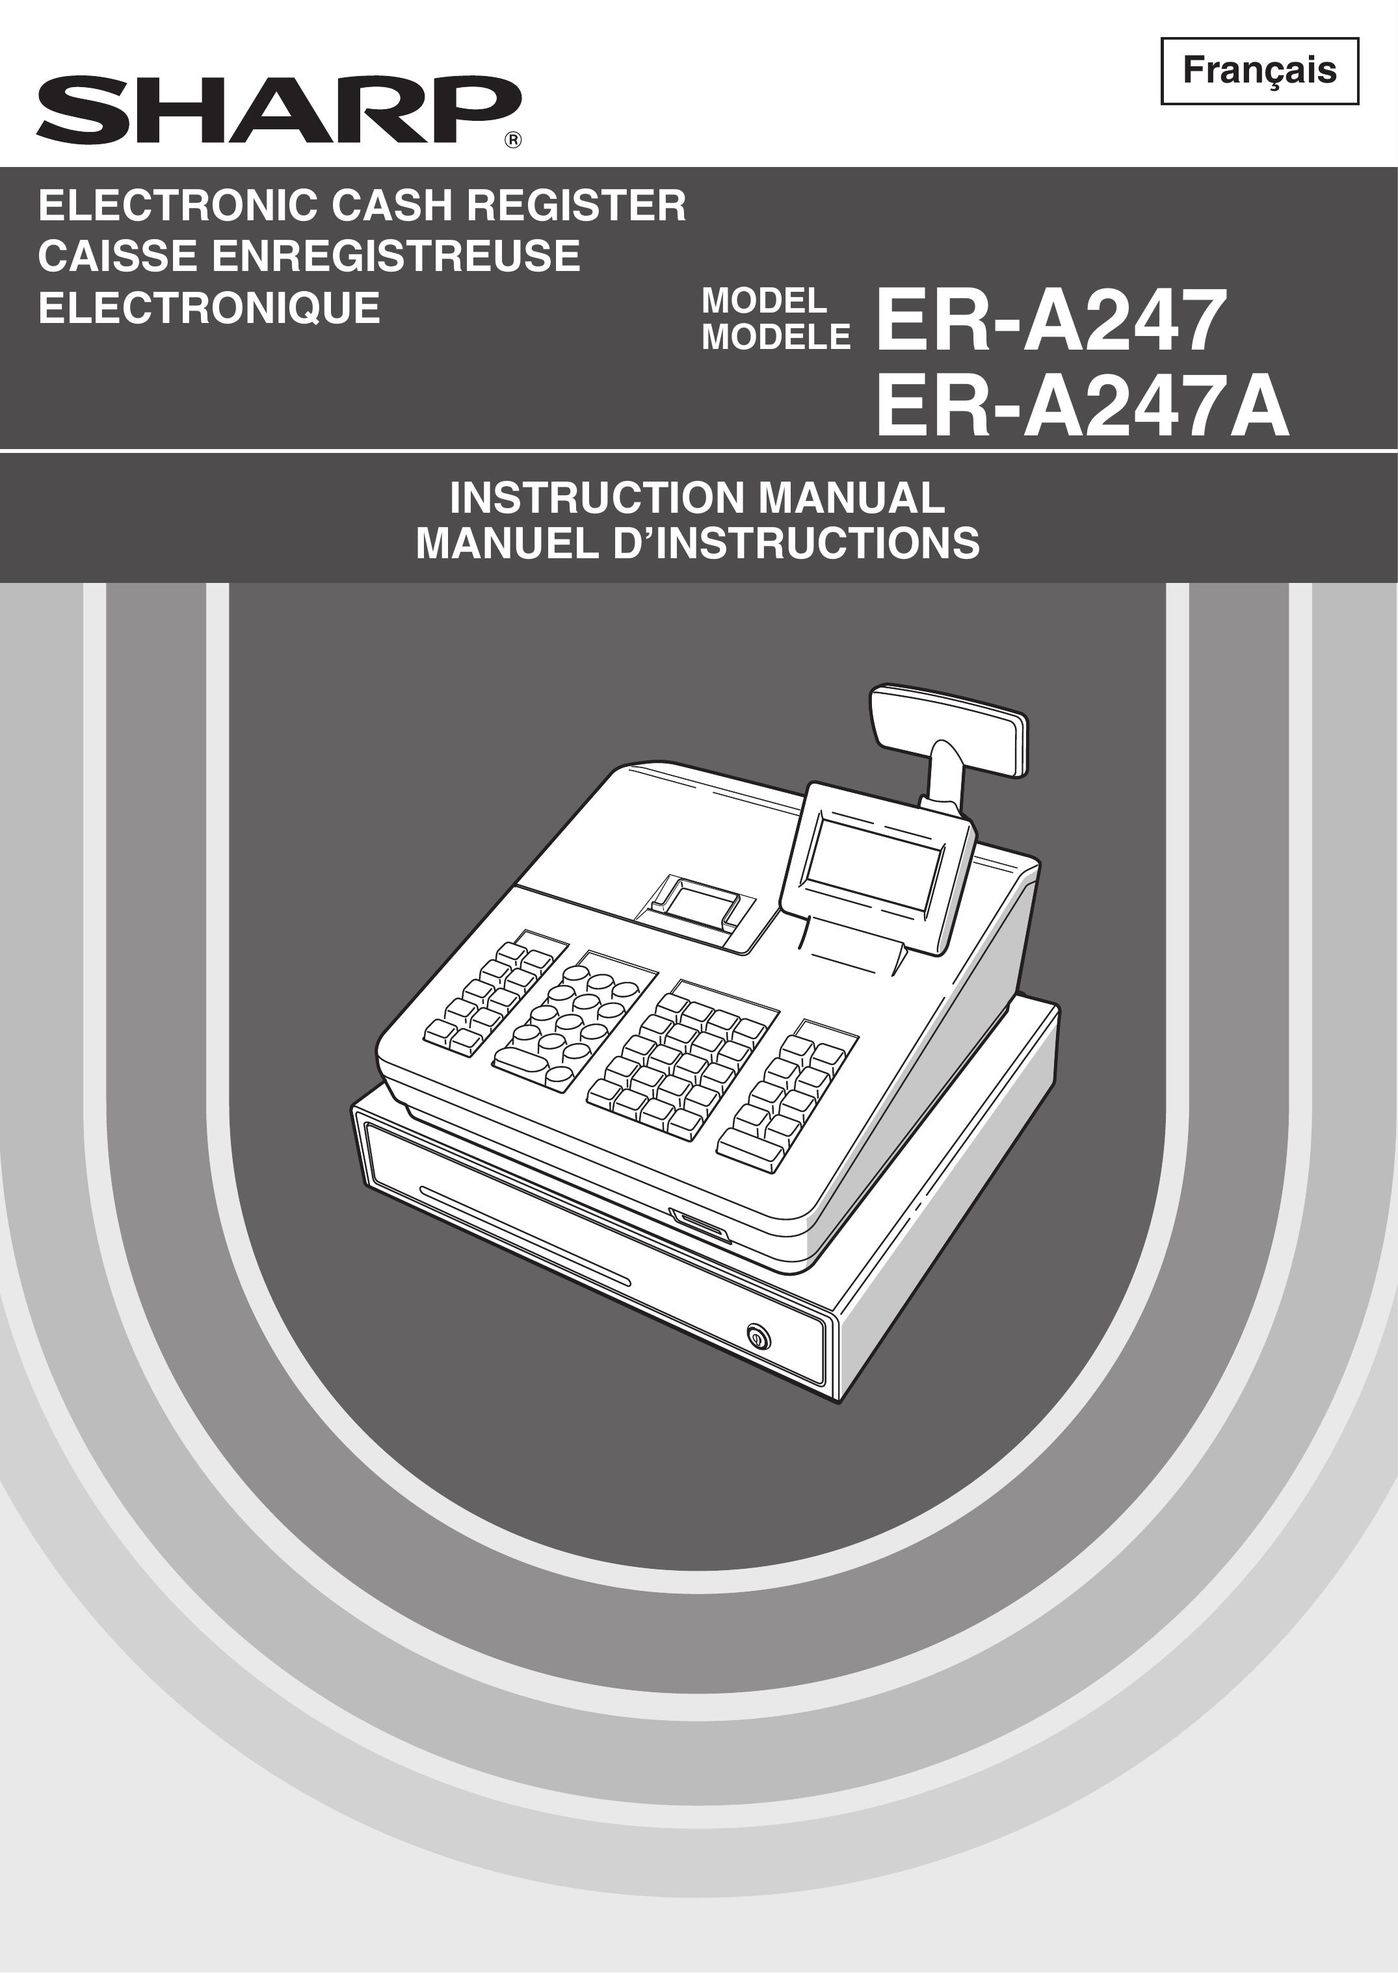 Sharp ER-A247 Cash Register User Manual